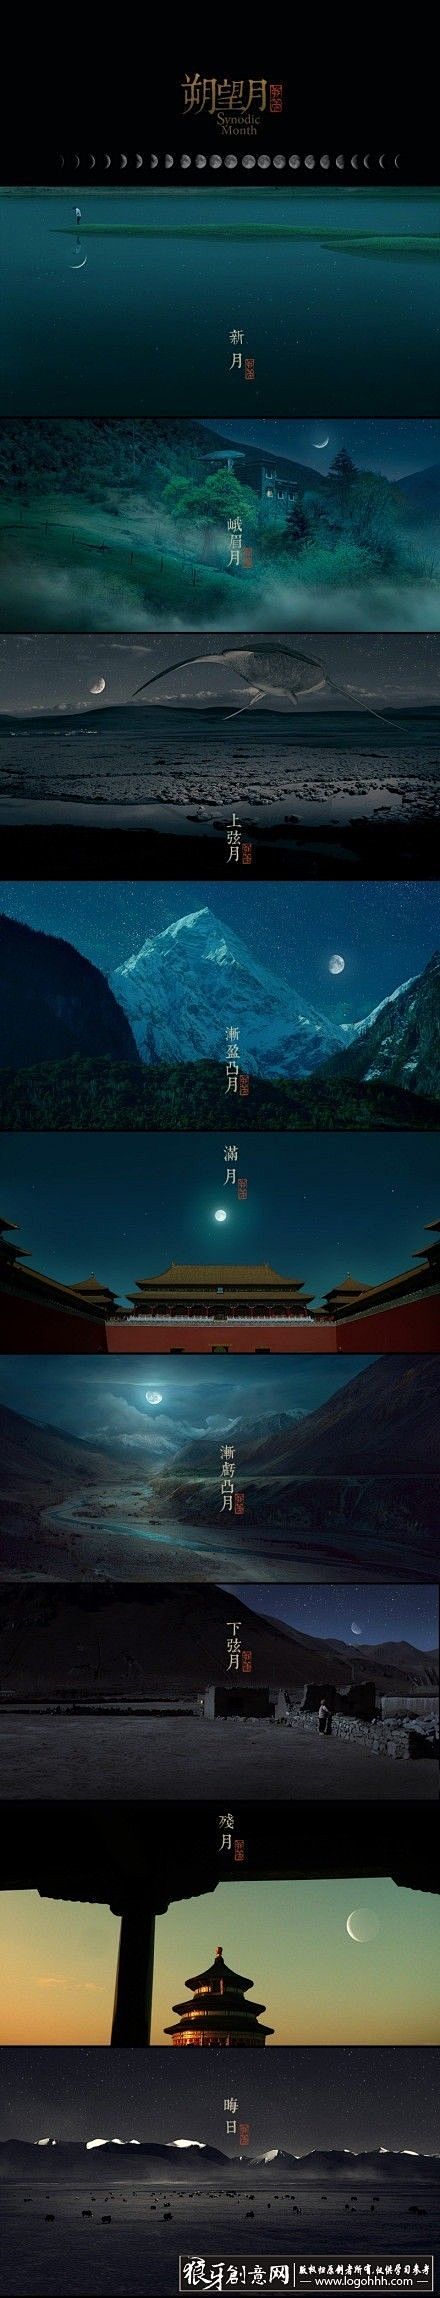 艺术摄影 中国风-月相图 月亮 夜空 晚...